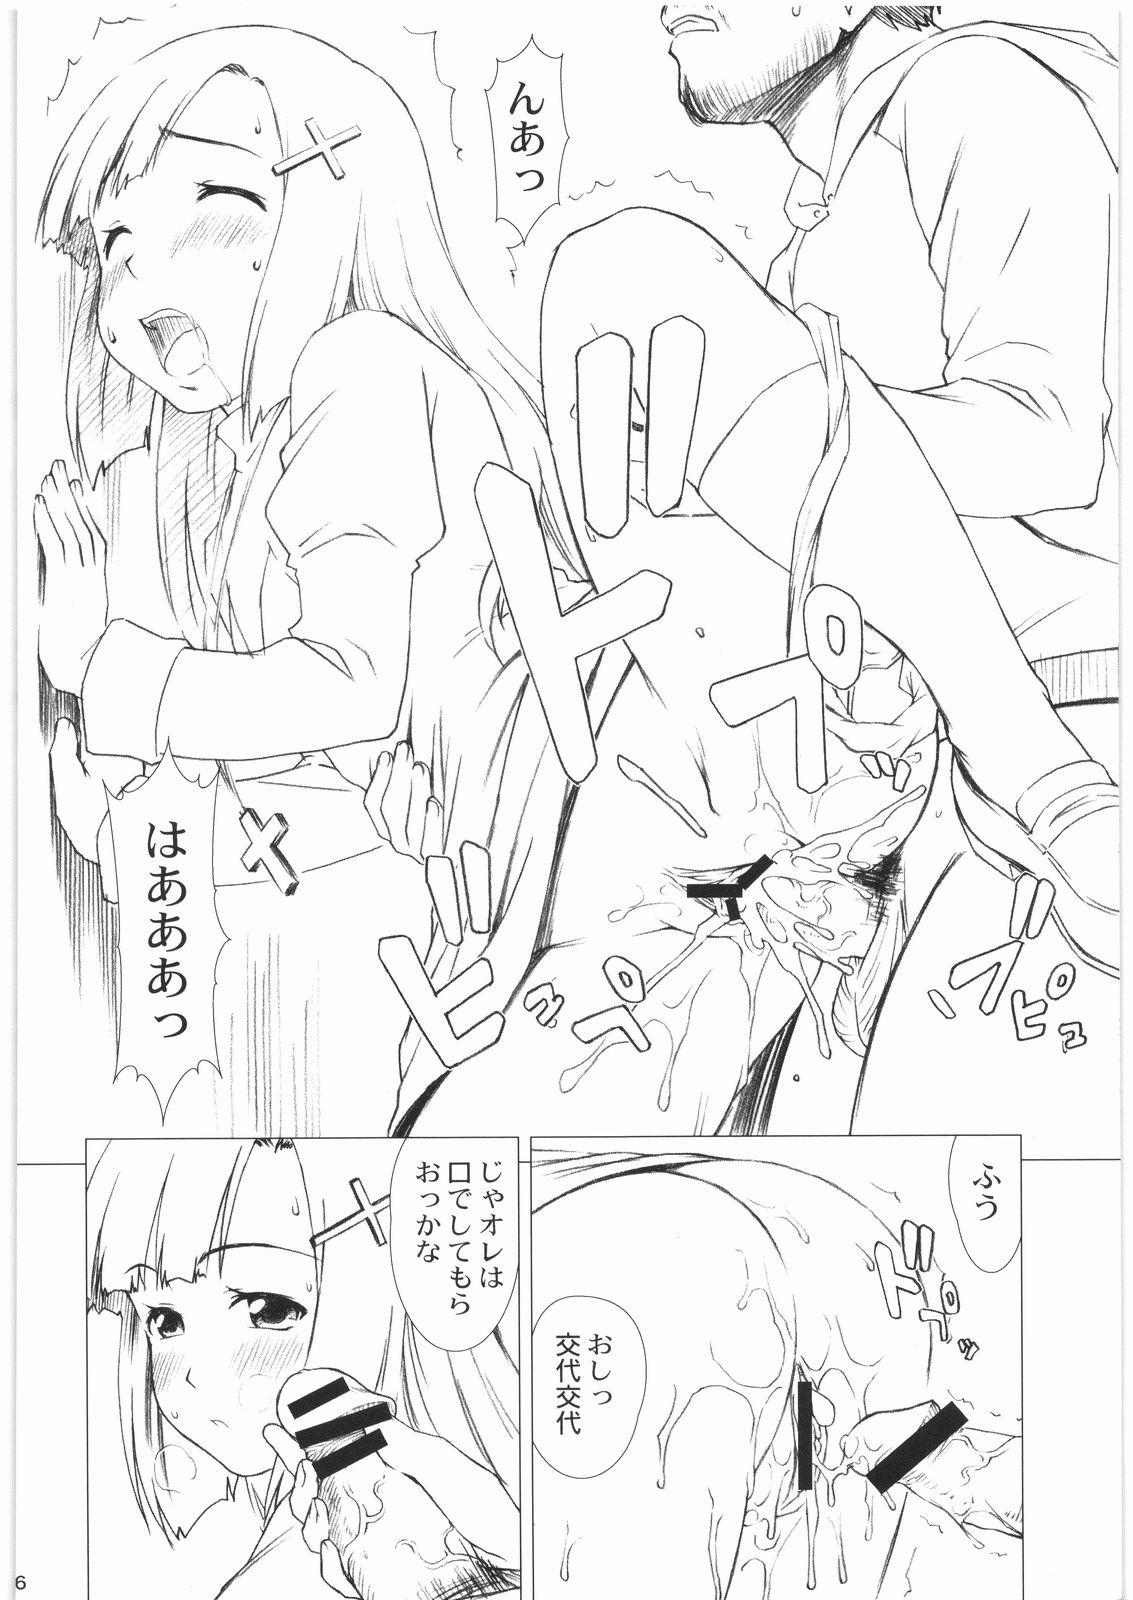 Caseiro Zange-chan 1 kai 100 en - Kannagi Whipping - Page 6